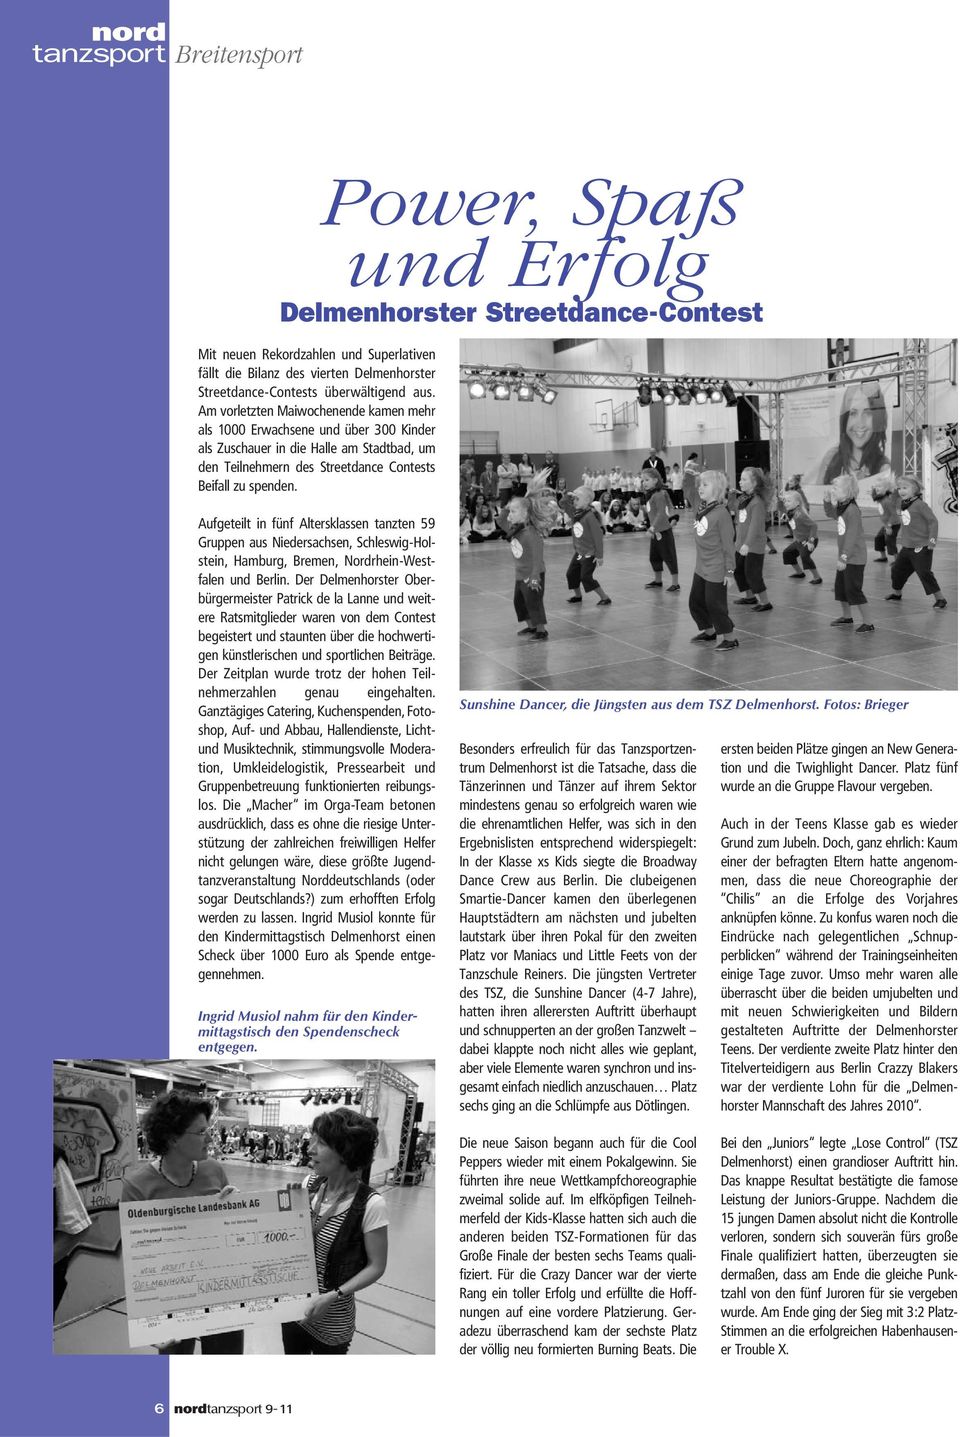 Aufgeteilt in fünf Altersklassen tanzten 59 Gruppen aus Niedersachsen, Schleswig-Holstein, Hamburg, Bremen, Nordrhein-Westfalen und Berlin.